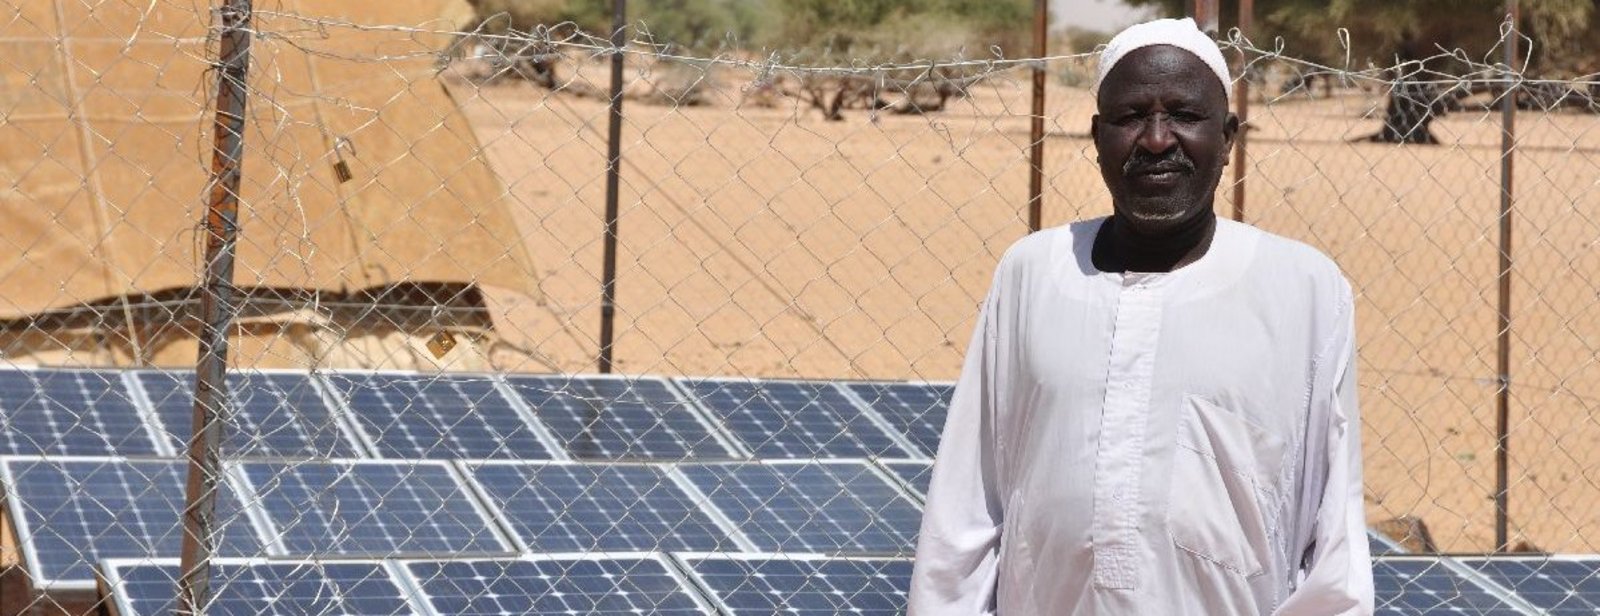 Mann im Tschad vor Solarpanelen